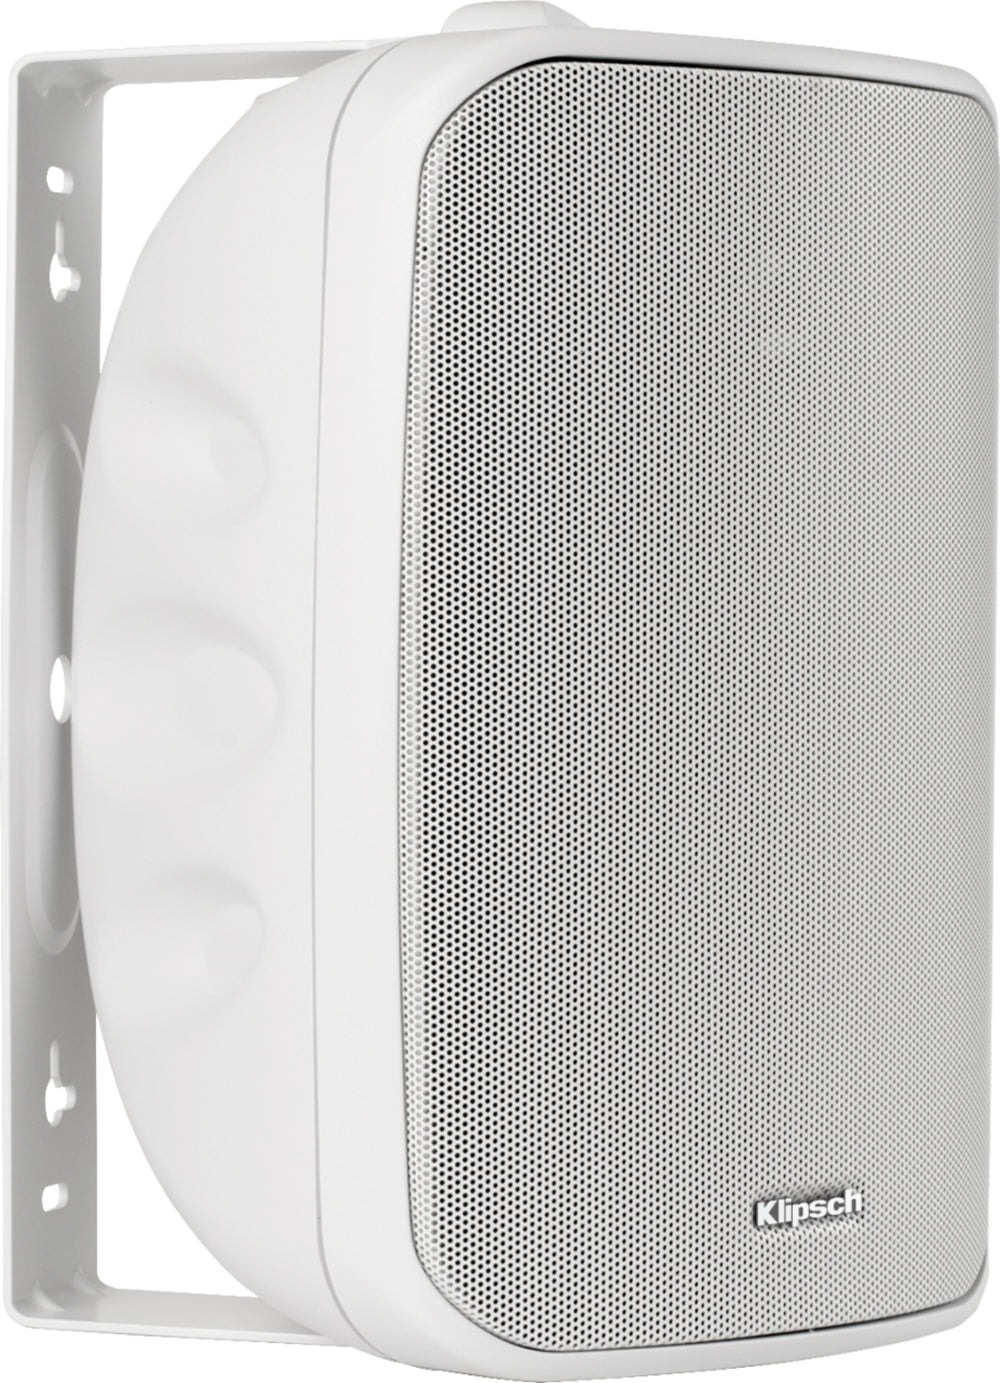 Klipsch - KIO-650 Indoor/Outdoor All-Weather Speakers (pair) - White_1